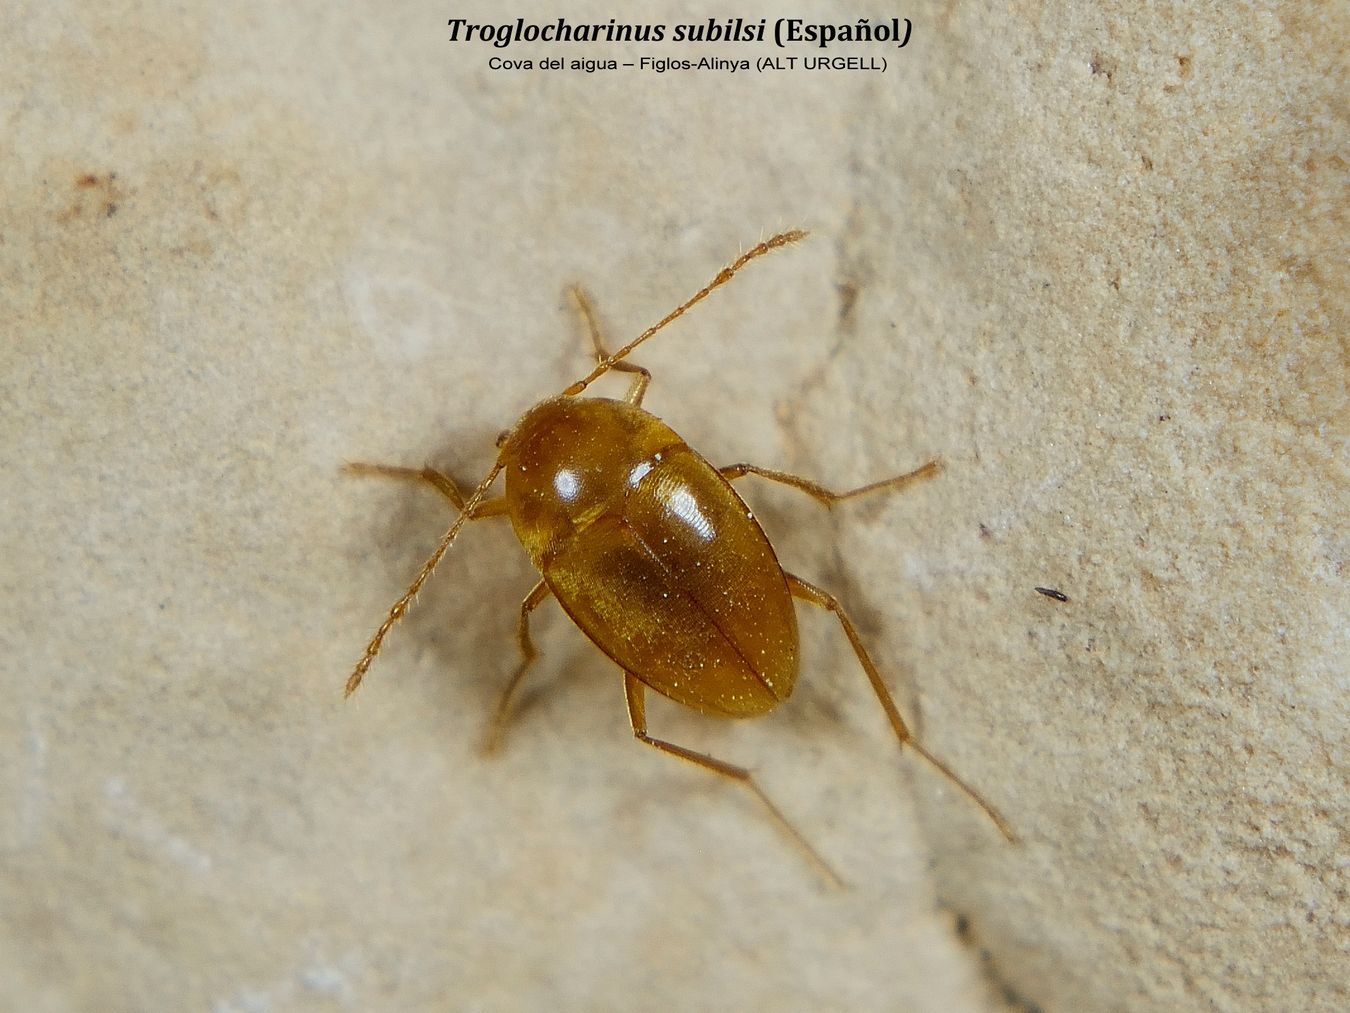 Troglocharinus subilsi - cv. del aigua - Figols-Alinya (ALT URGELL)a